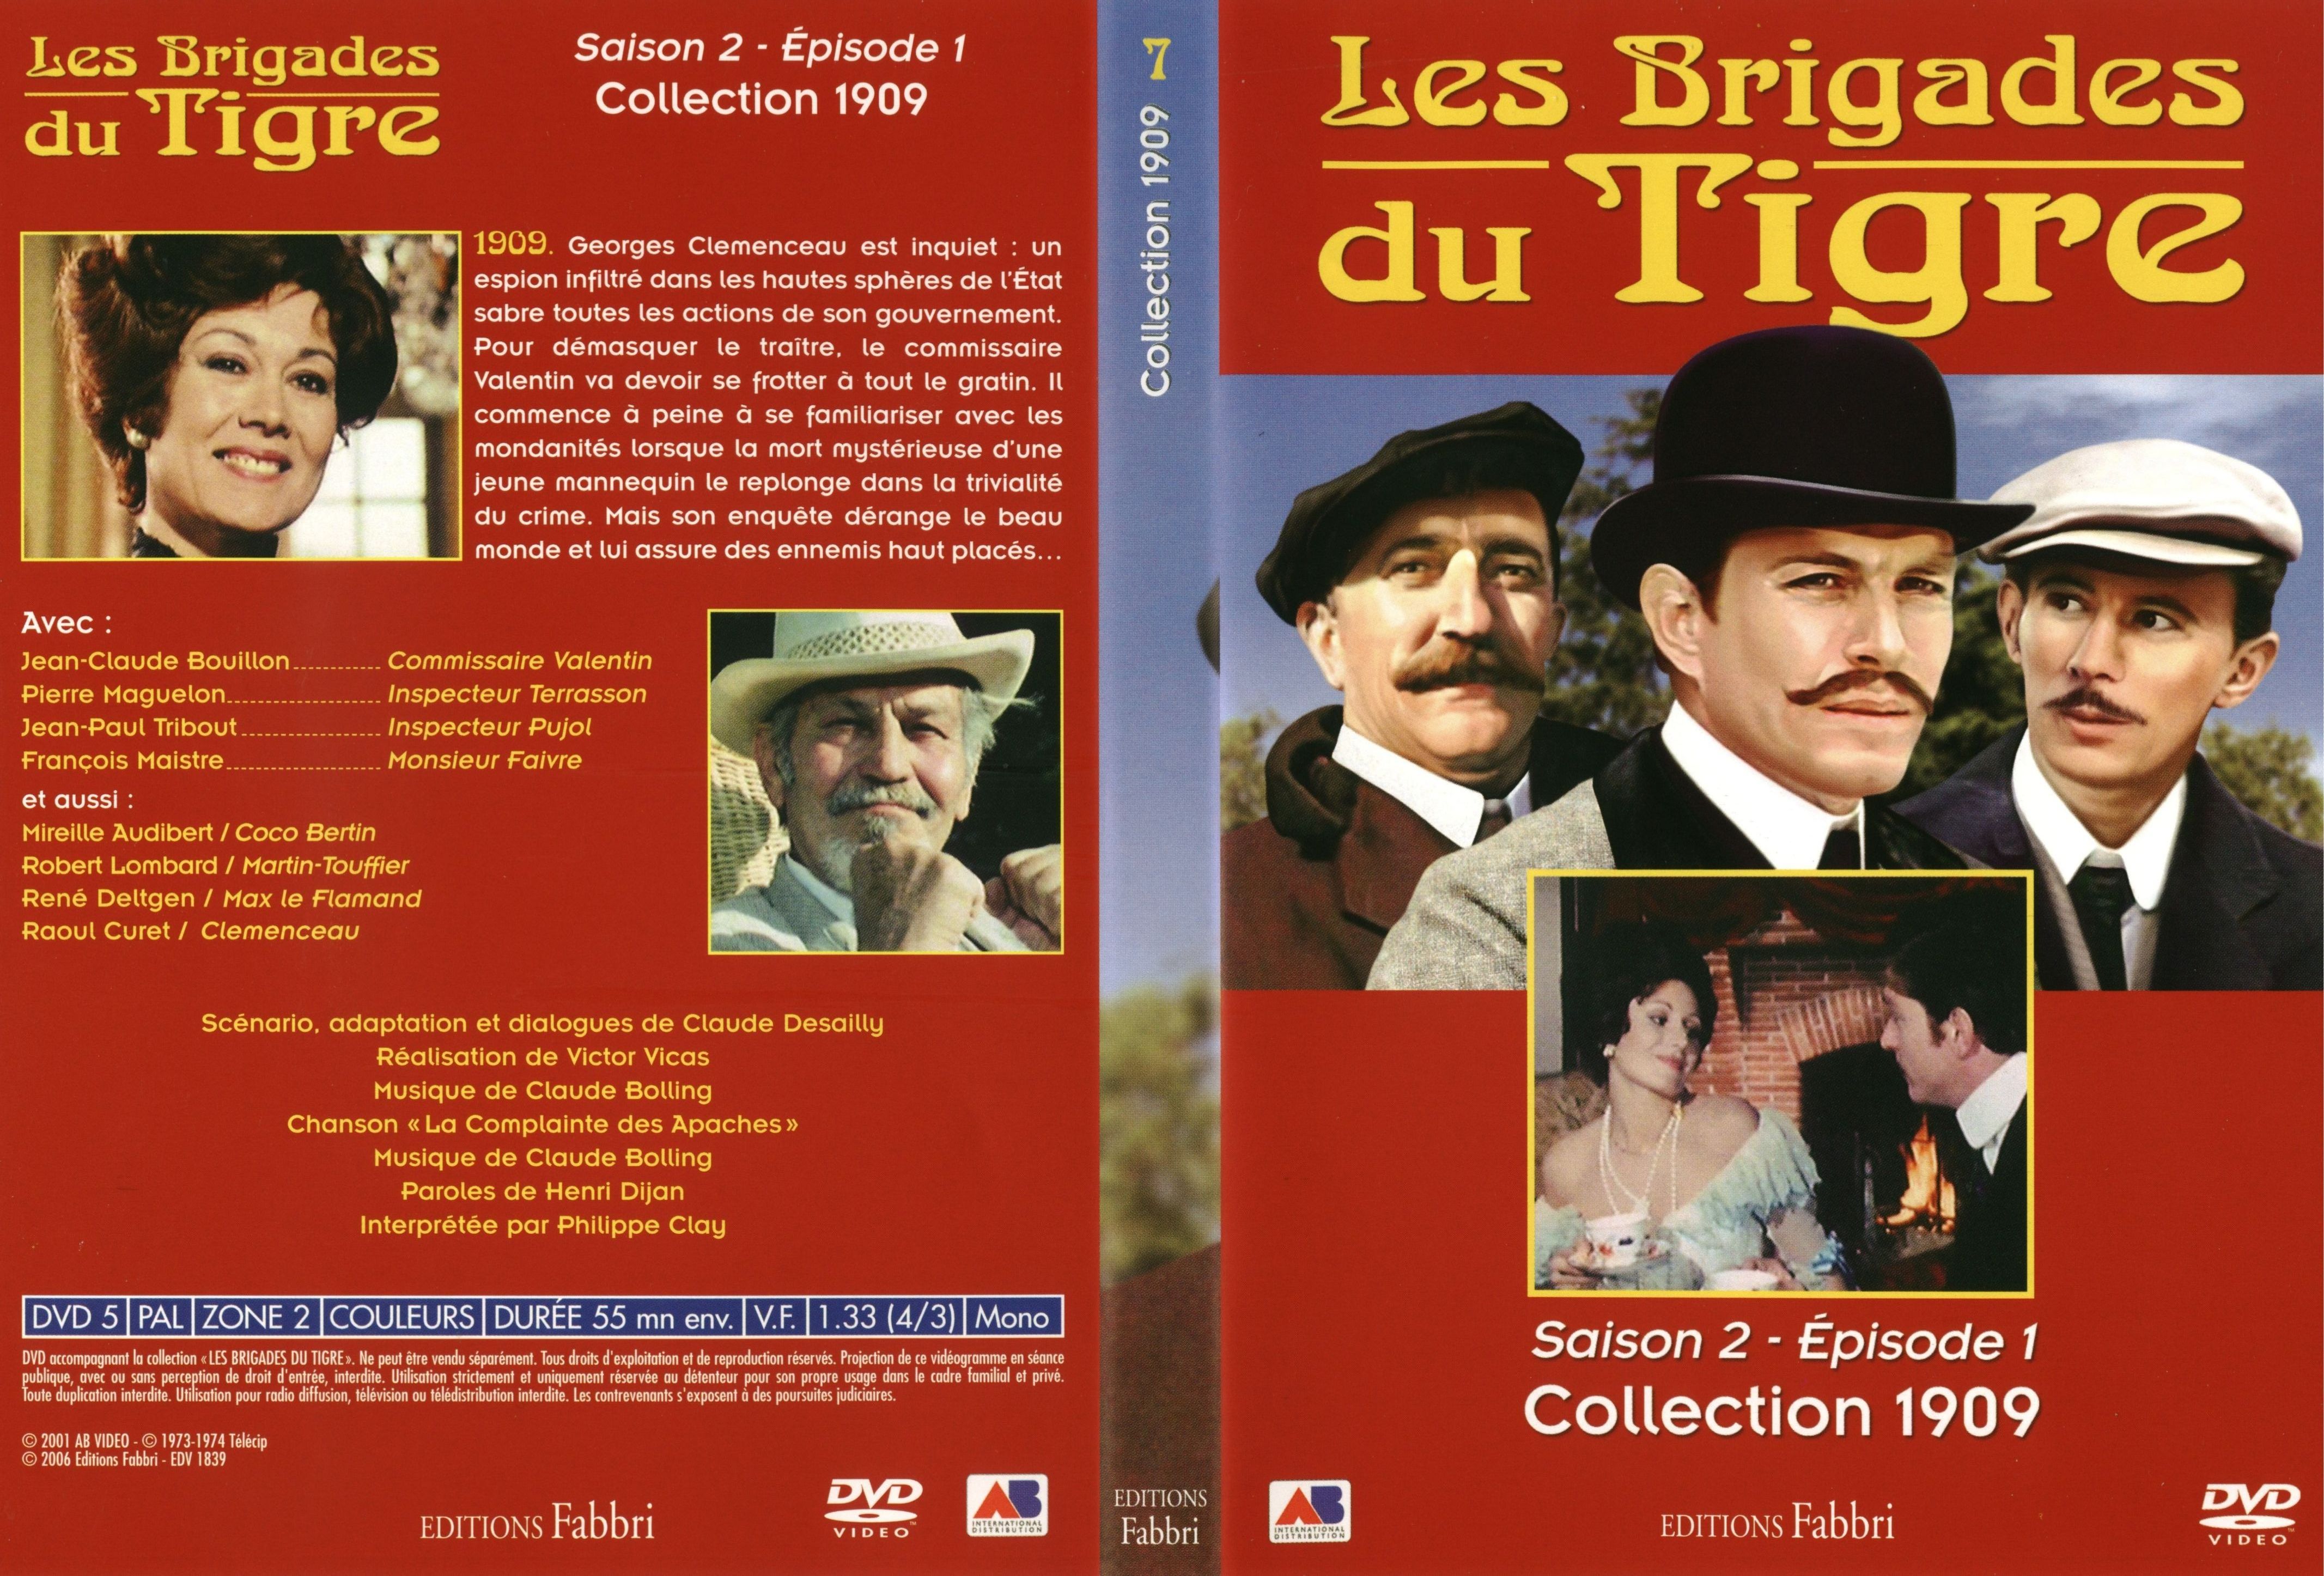 Jaquette DVD Les brigades du tigre saison 2 pisode 1